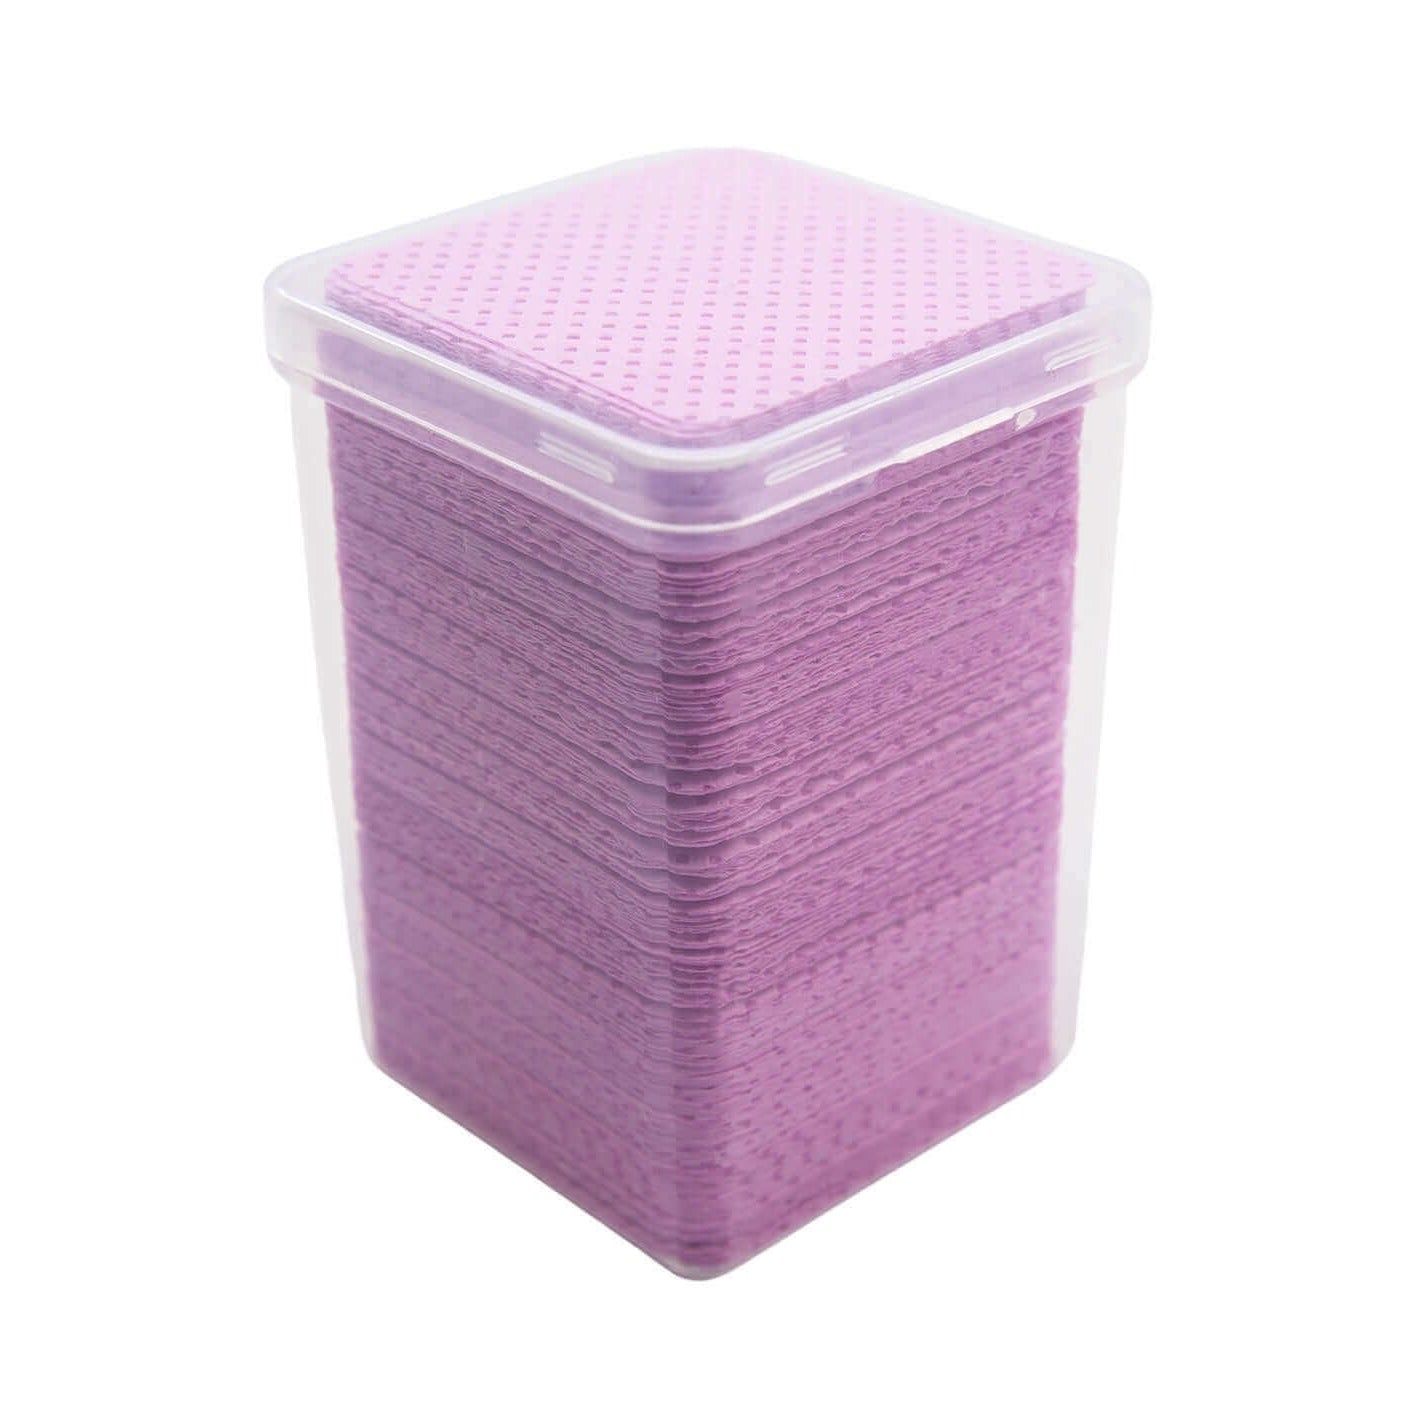 Zellettenbox Pink Grösse: Zelletten Pink Box 200 Stück